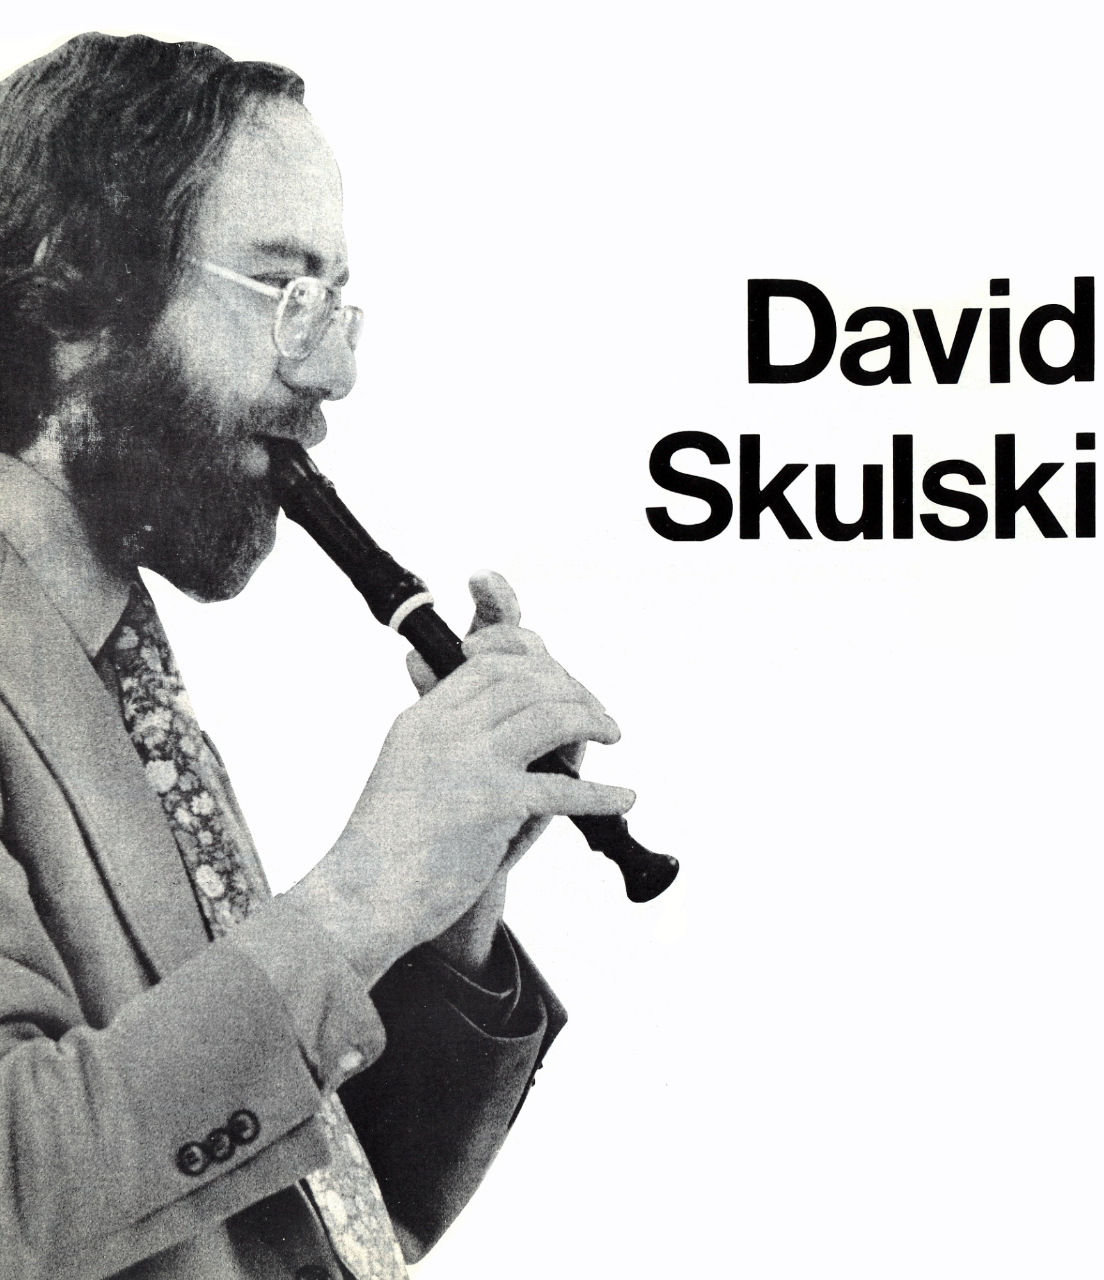 David Skulski